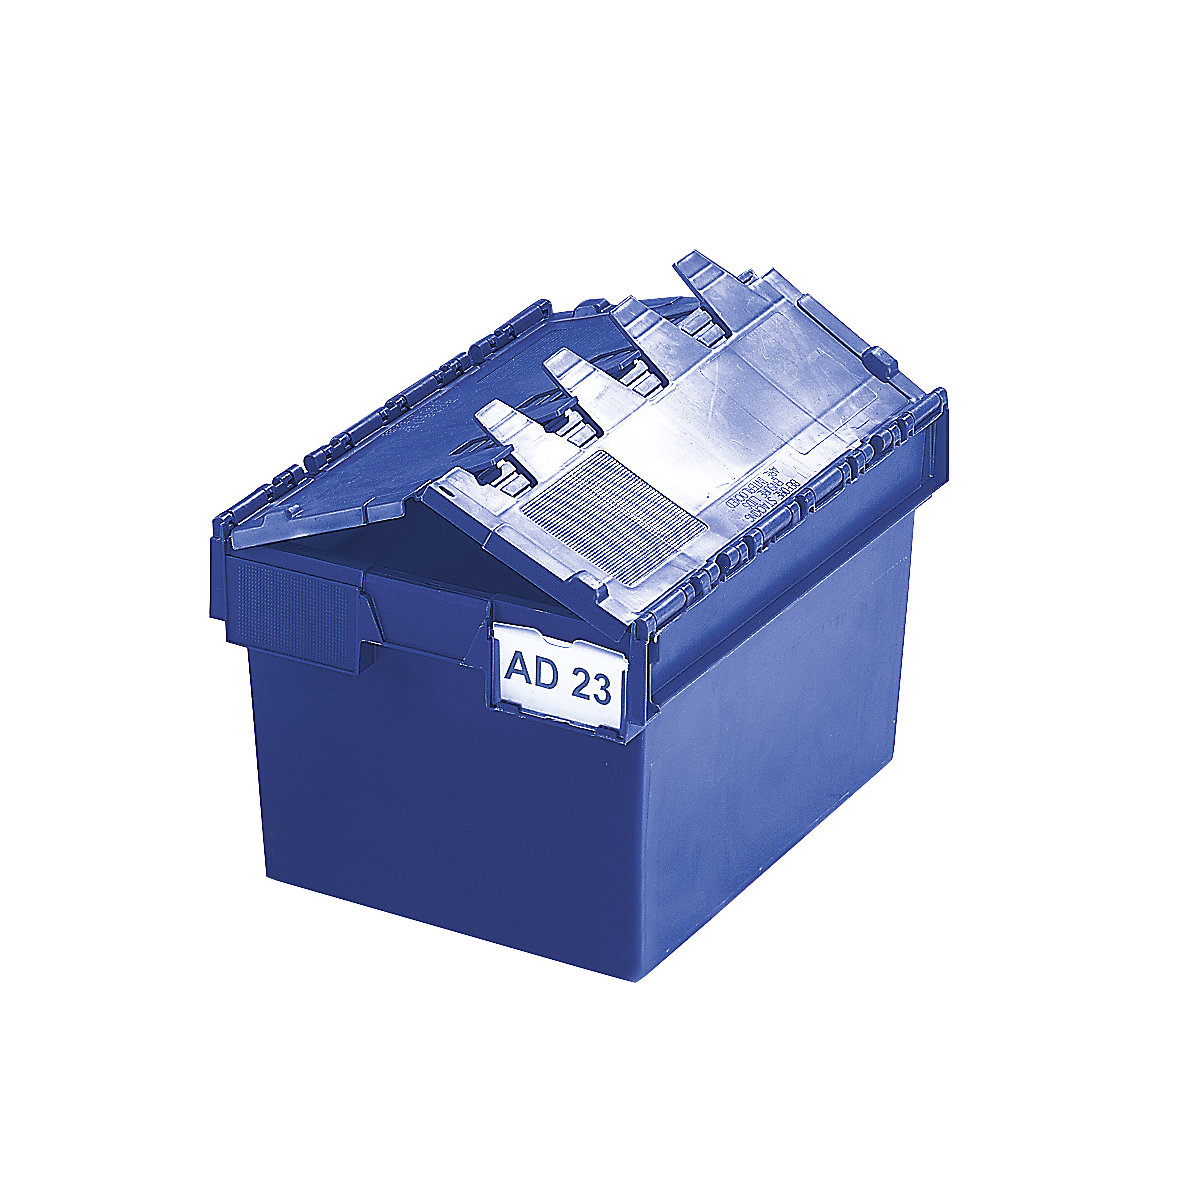 Recipiente empilhável e retornável com tampa articulada, volume 54 litros, CxLxA 600 x 400 x 320 mm, azul